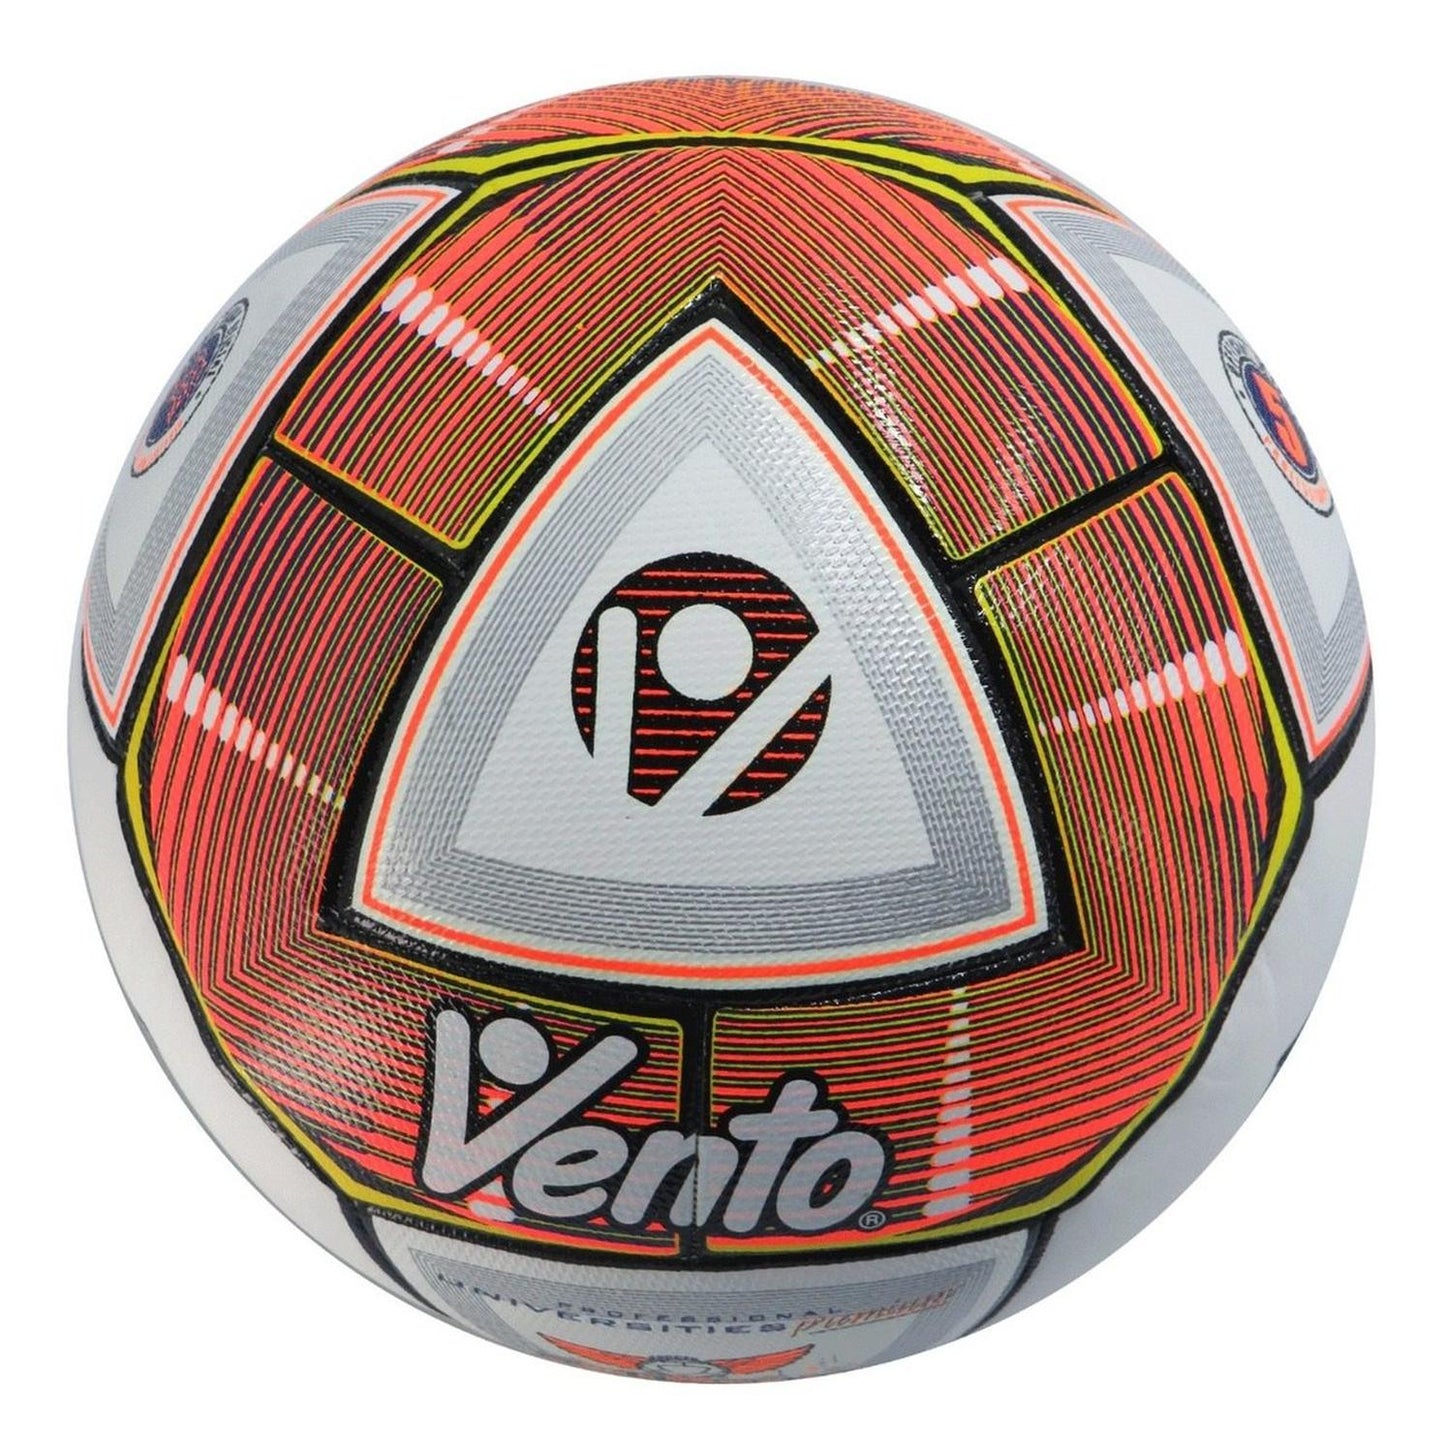 Balon Futbol Vento Profesional Millenial Oficial Ascun No 5